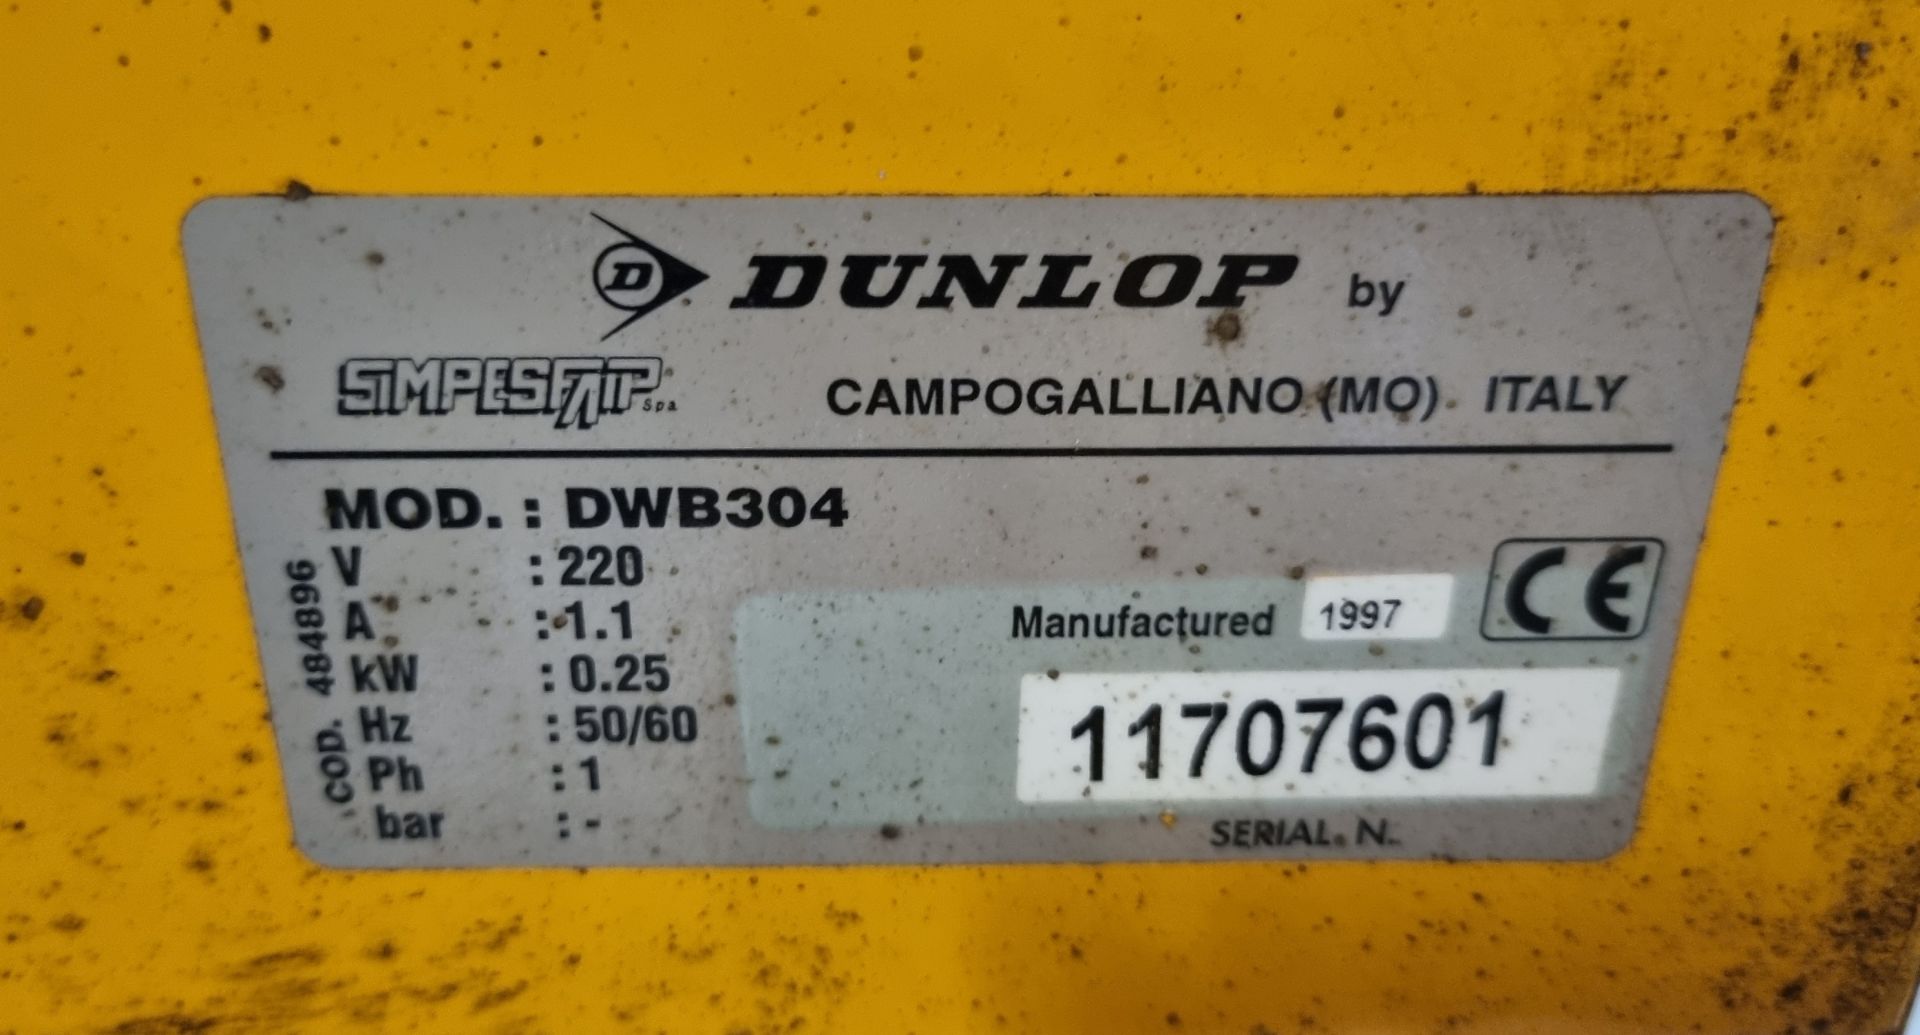 Dunlop DWB/304 wheel balancing machine - Image 4 of 4